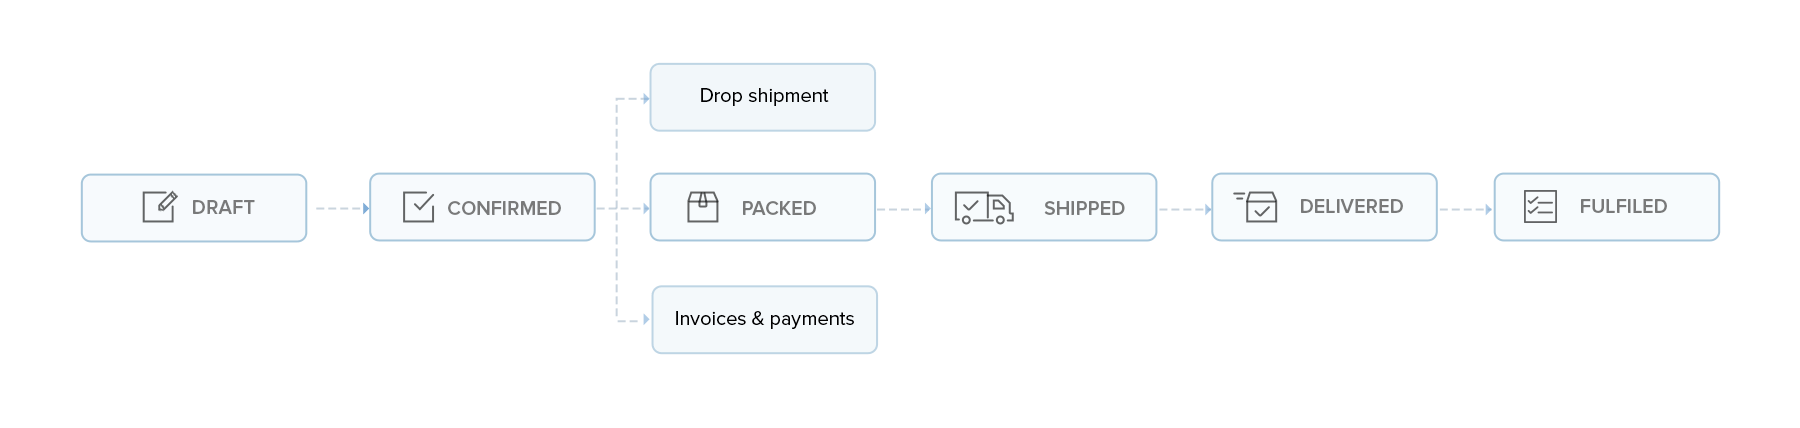 Sales order workflow